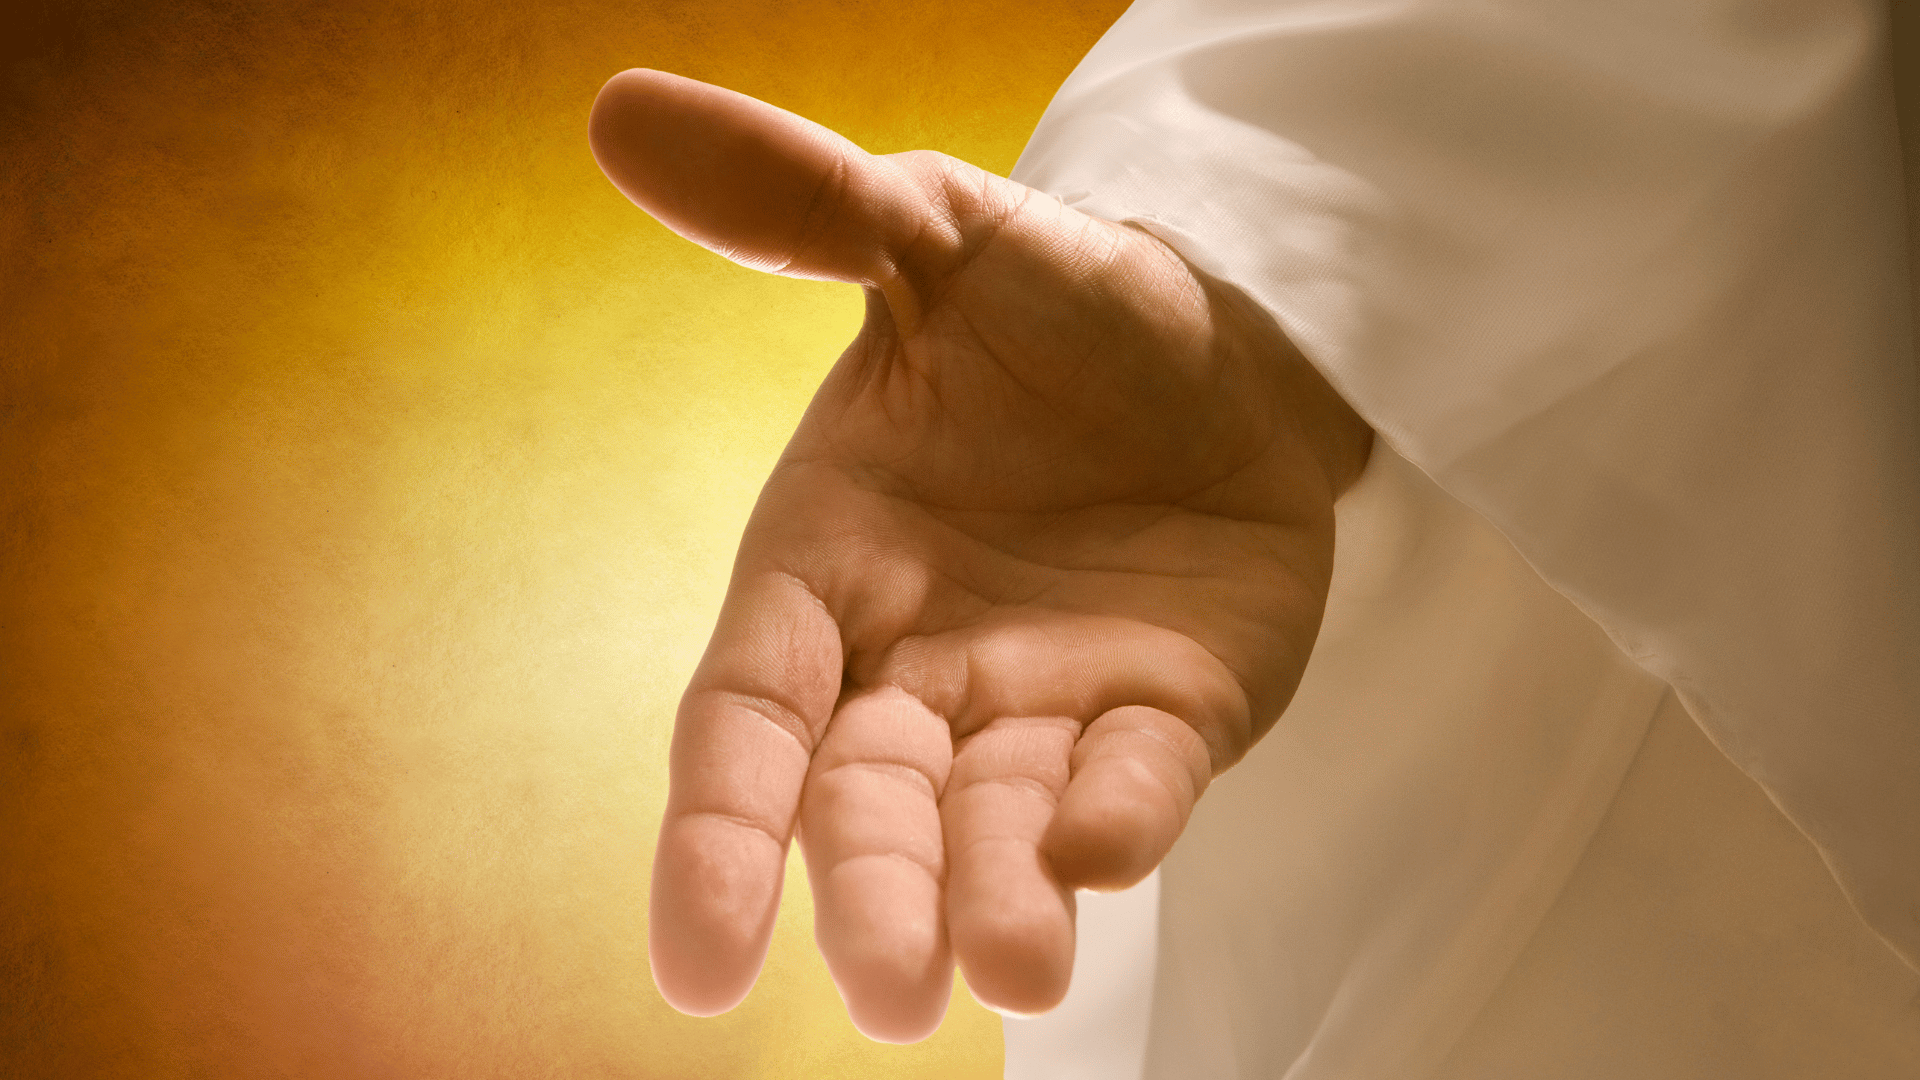 Mão de uma pessoa, representando a mão de Deus. Ao fundo, a imagem de uma luz amarela.